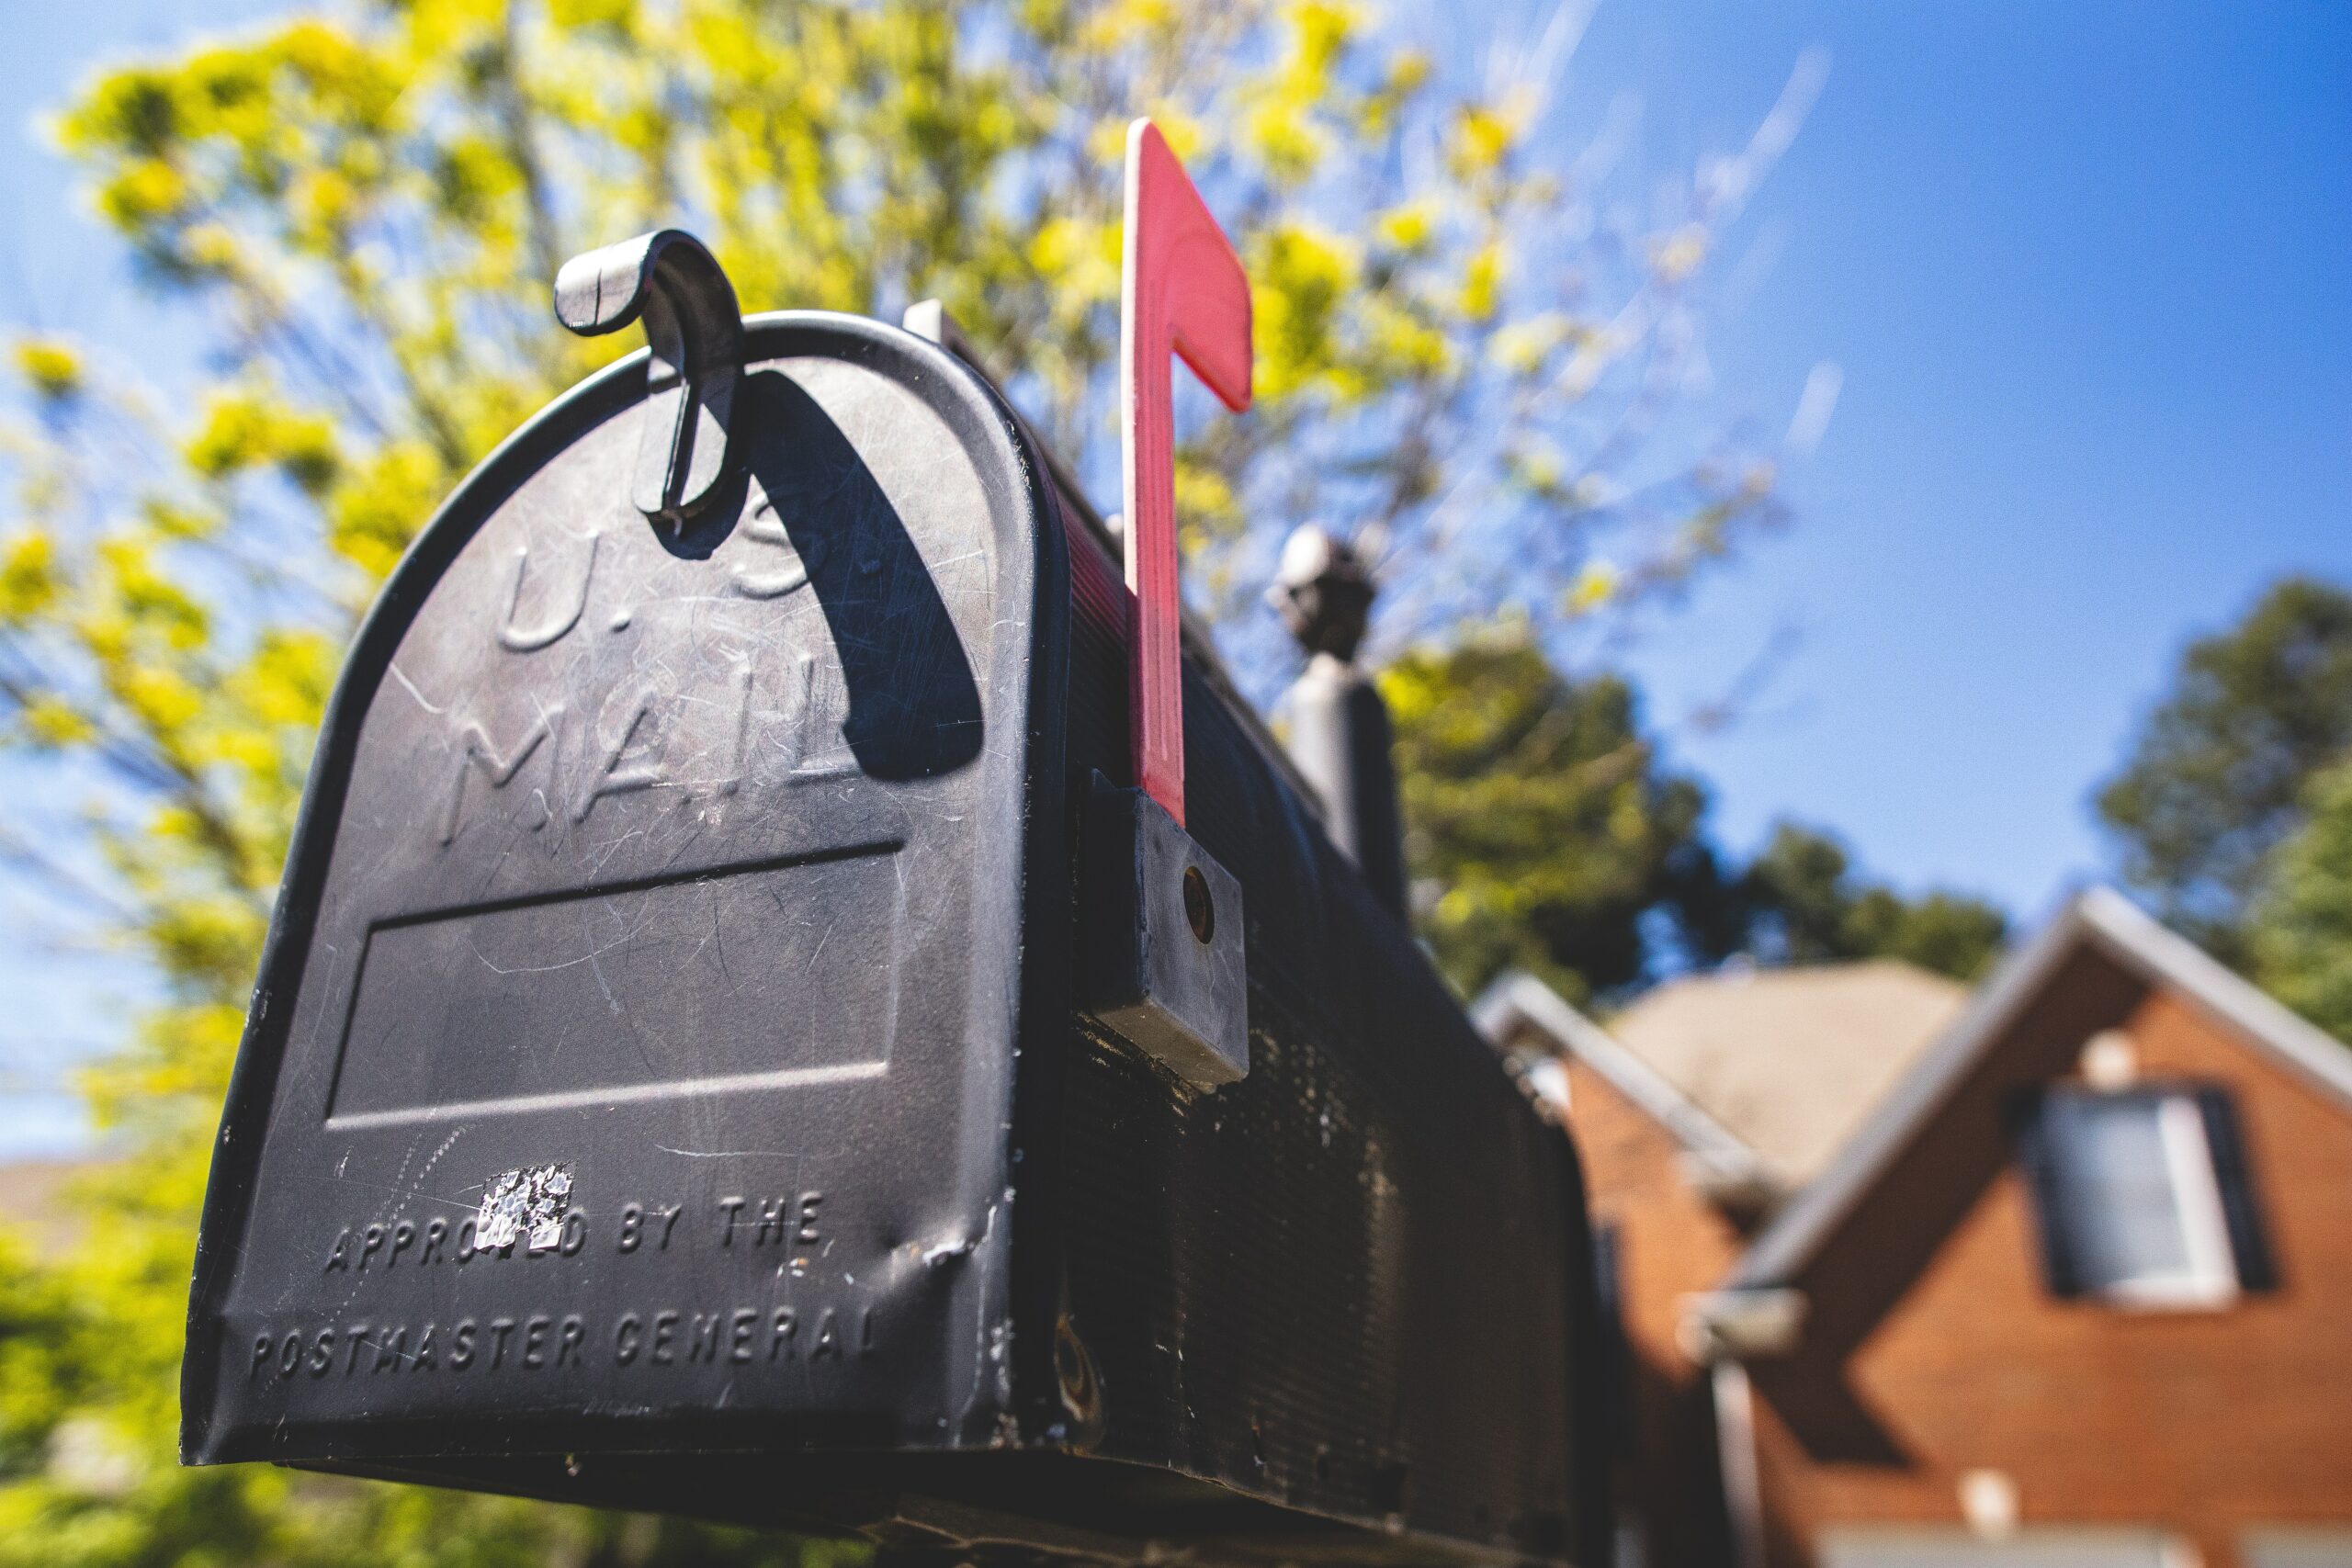 Using mail to market Mishawaka 